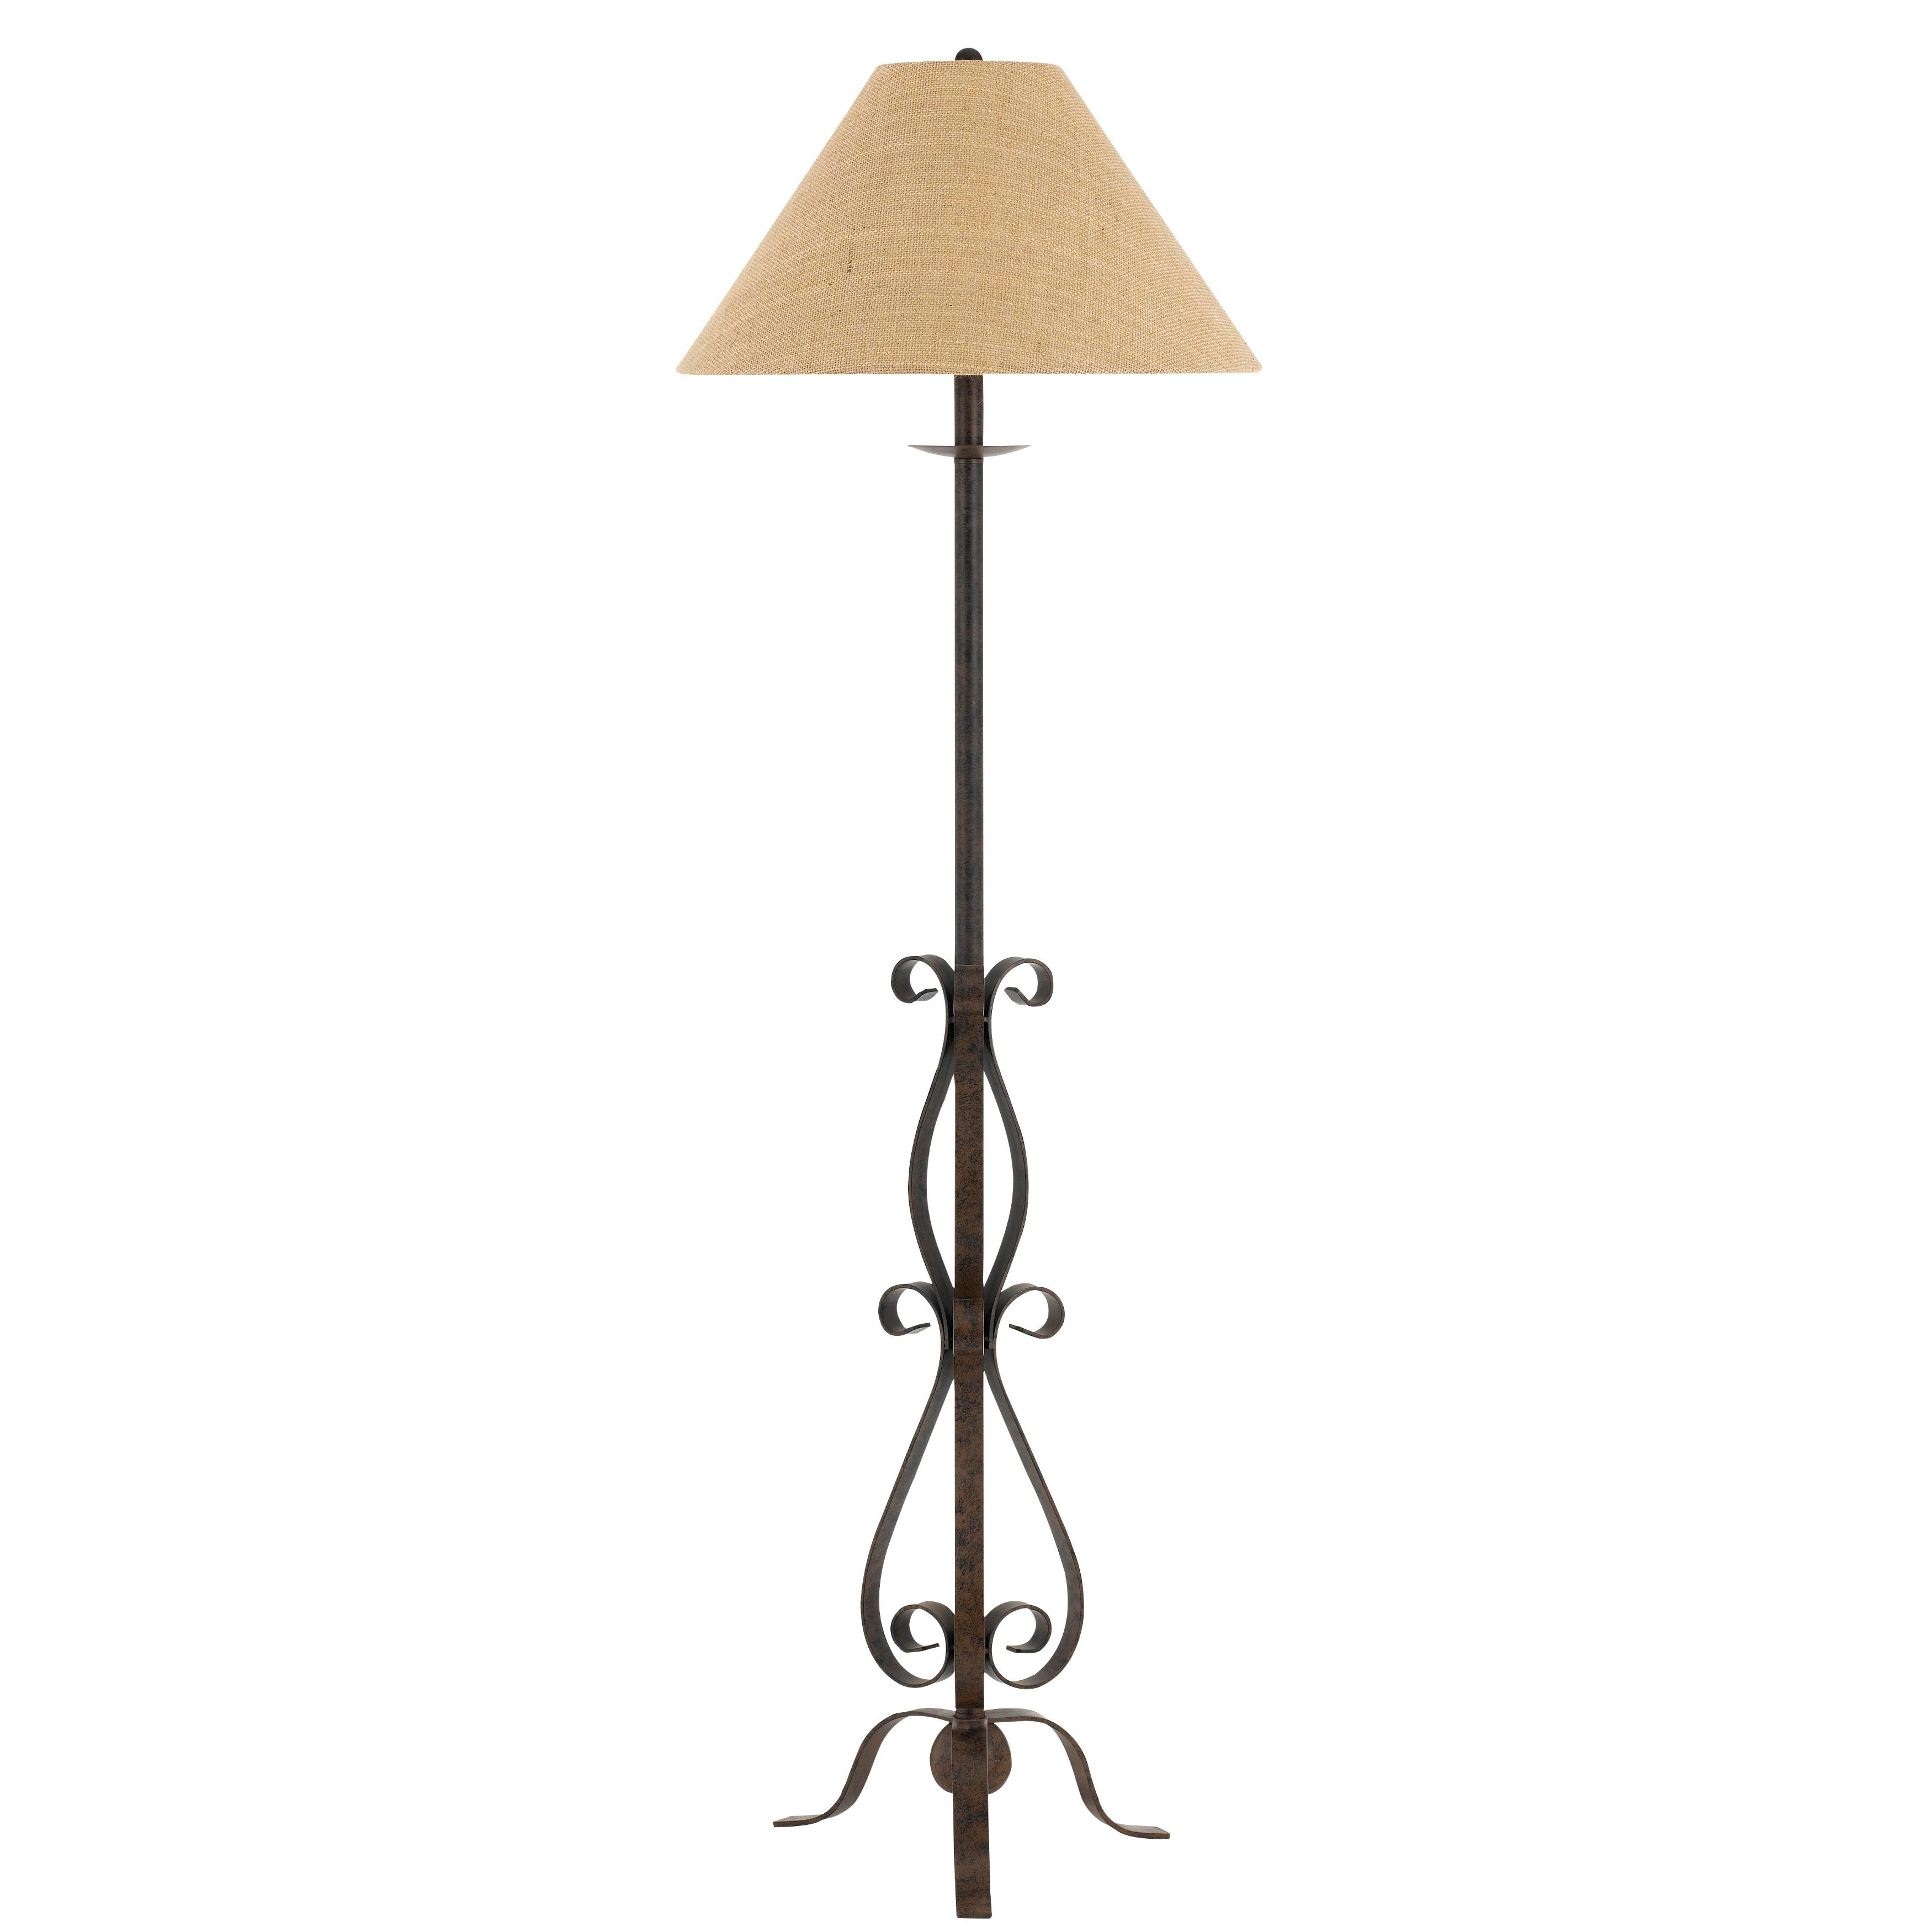 Ekalaka Tan Wrought Iron Floor Lamp With Burlap Shade inside dimensions 3500 X 3500